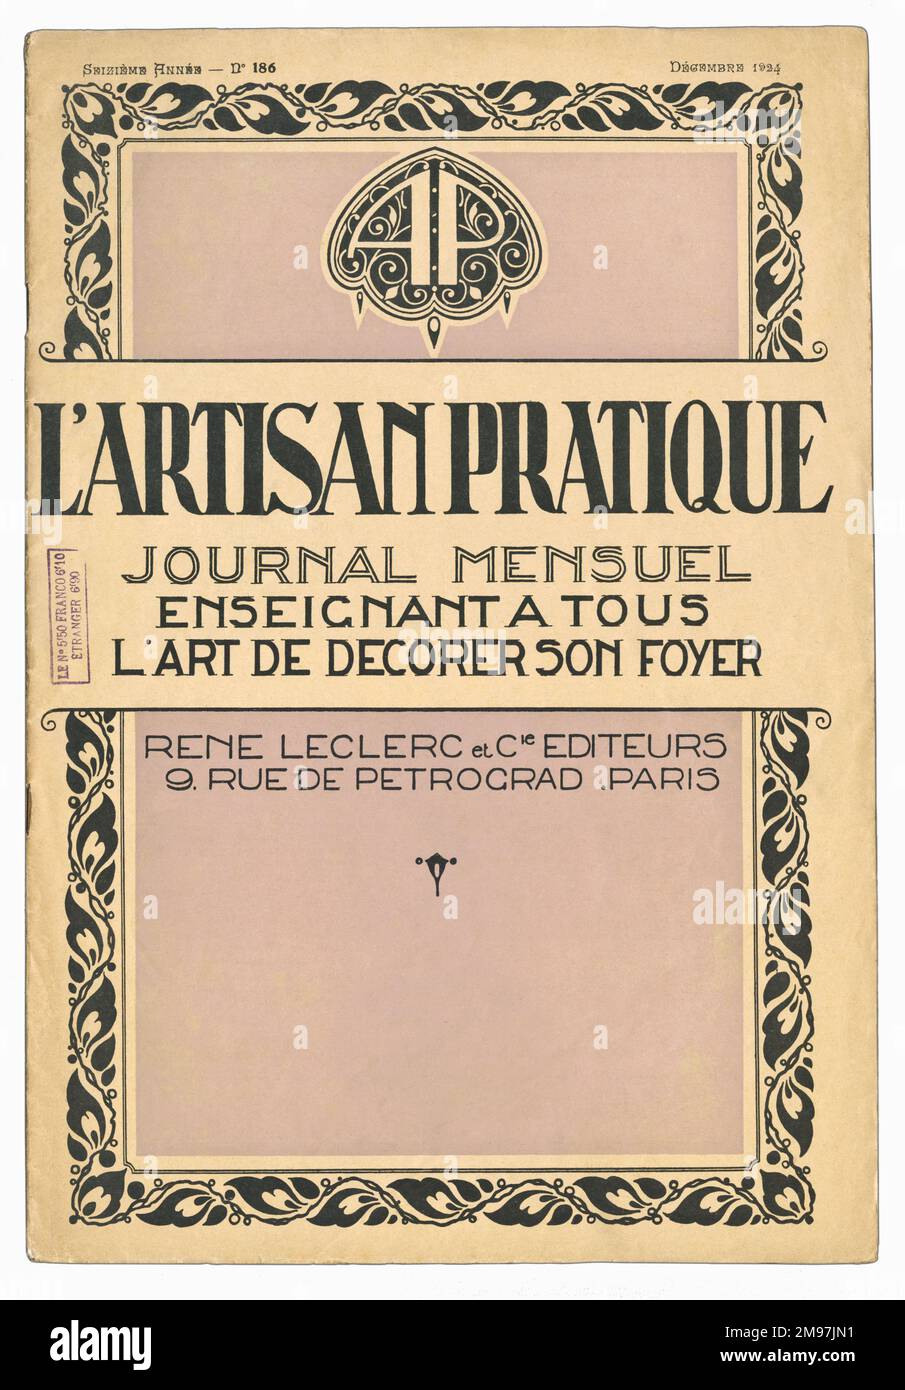 Couverture pour un magazine d'art décoratif français, l'Artisan pratique, décembre 1924. Banque D'Images